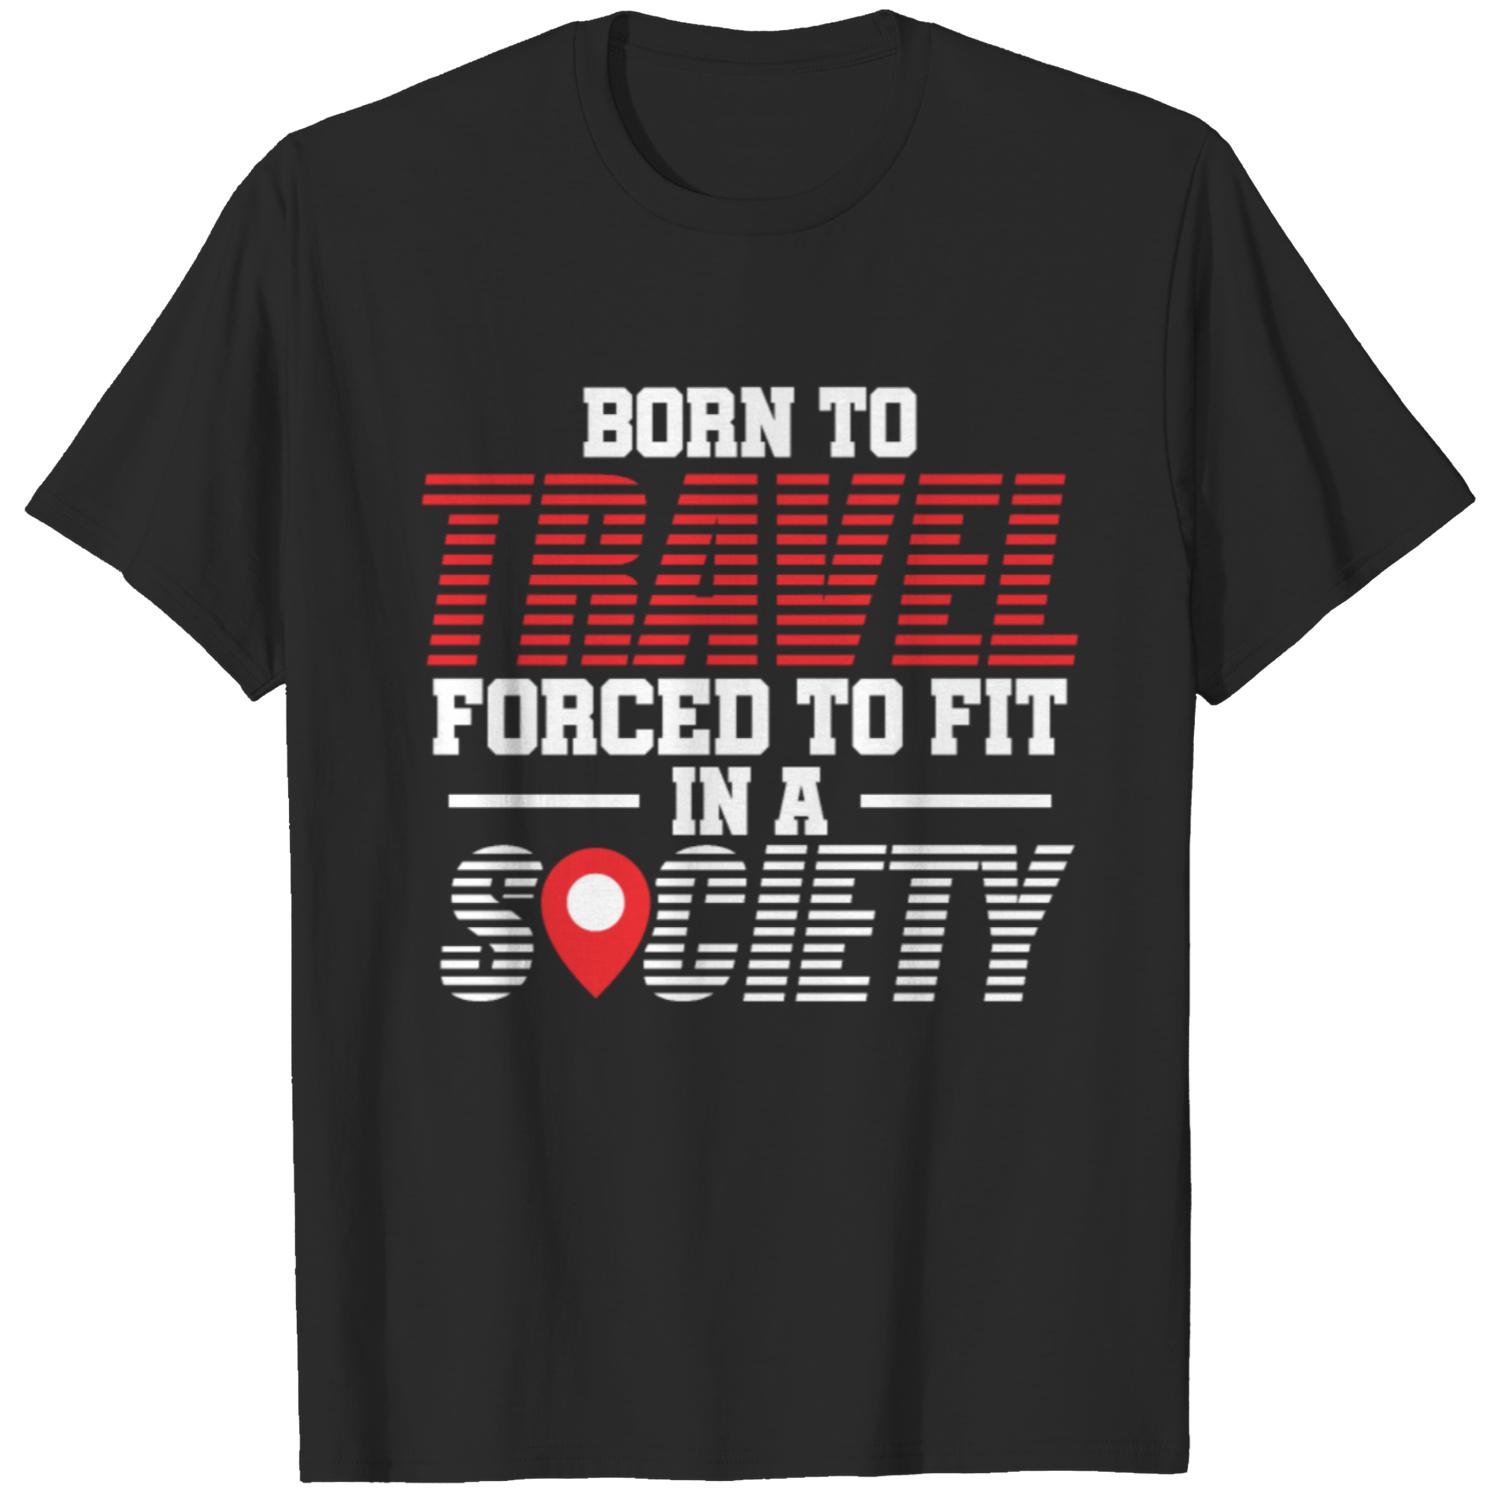 Adventurer Backpacker Traveler T-shirt